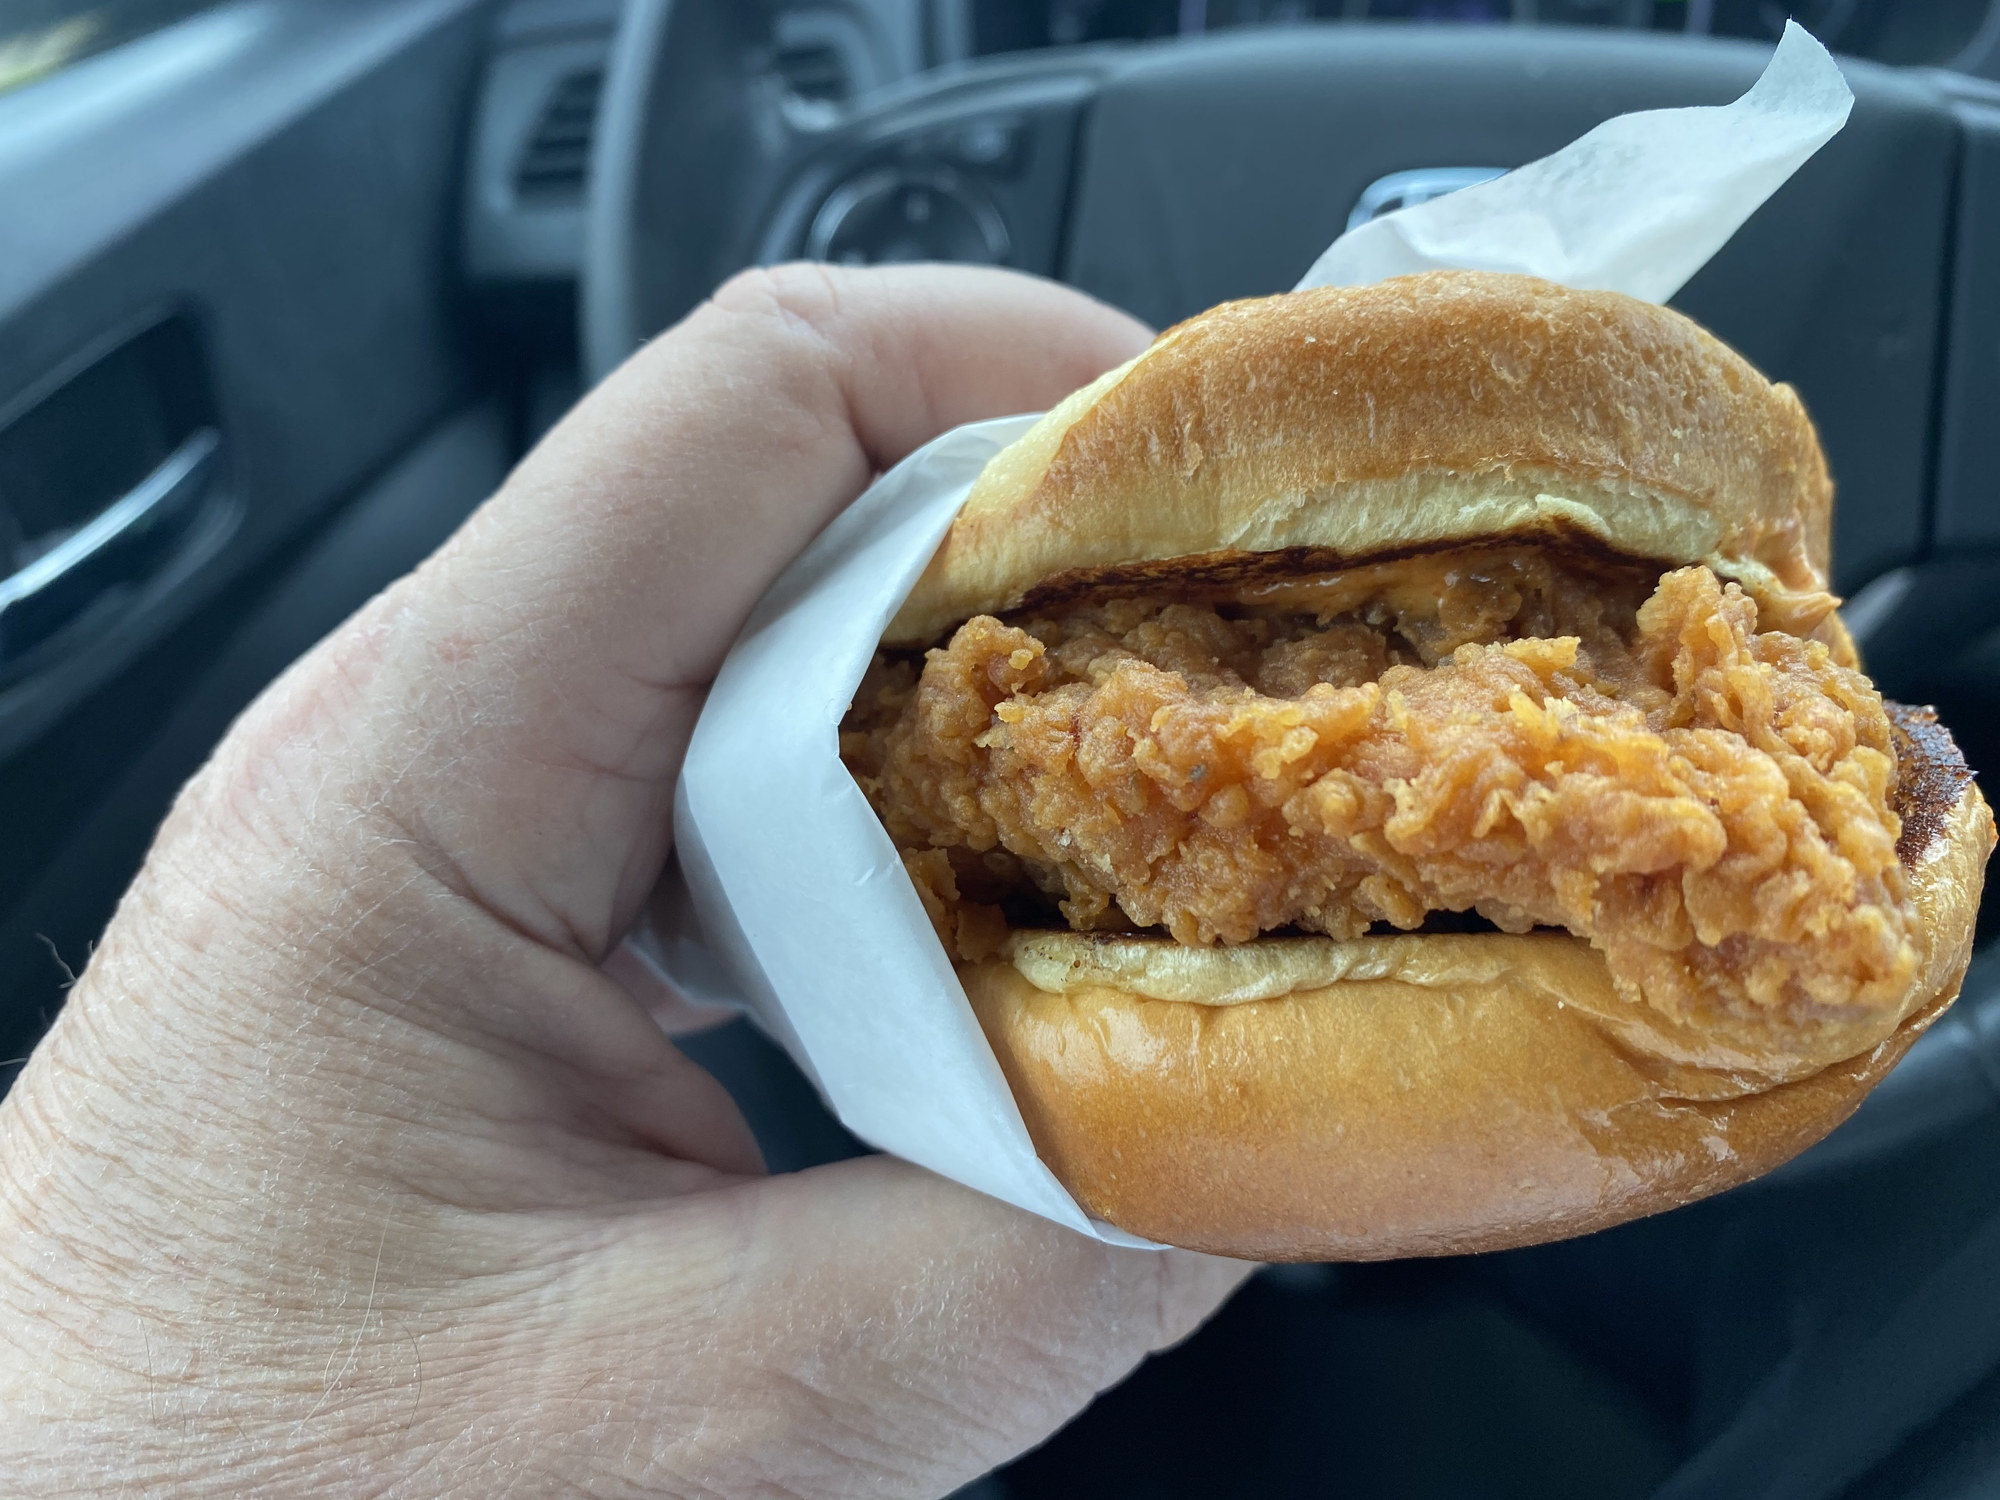 Hand holding a chicken sandwich